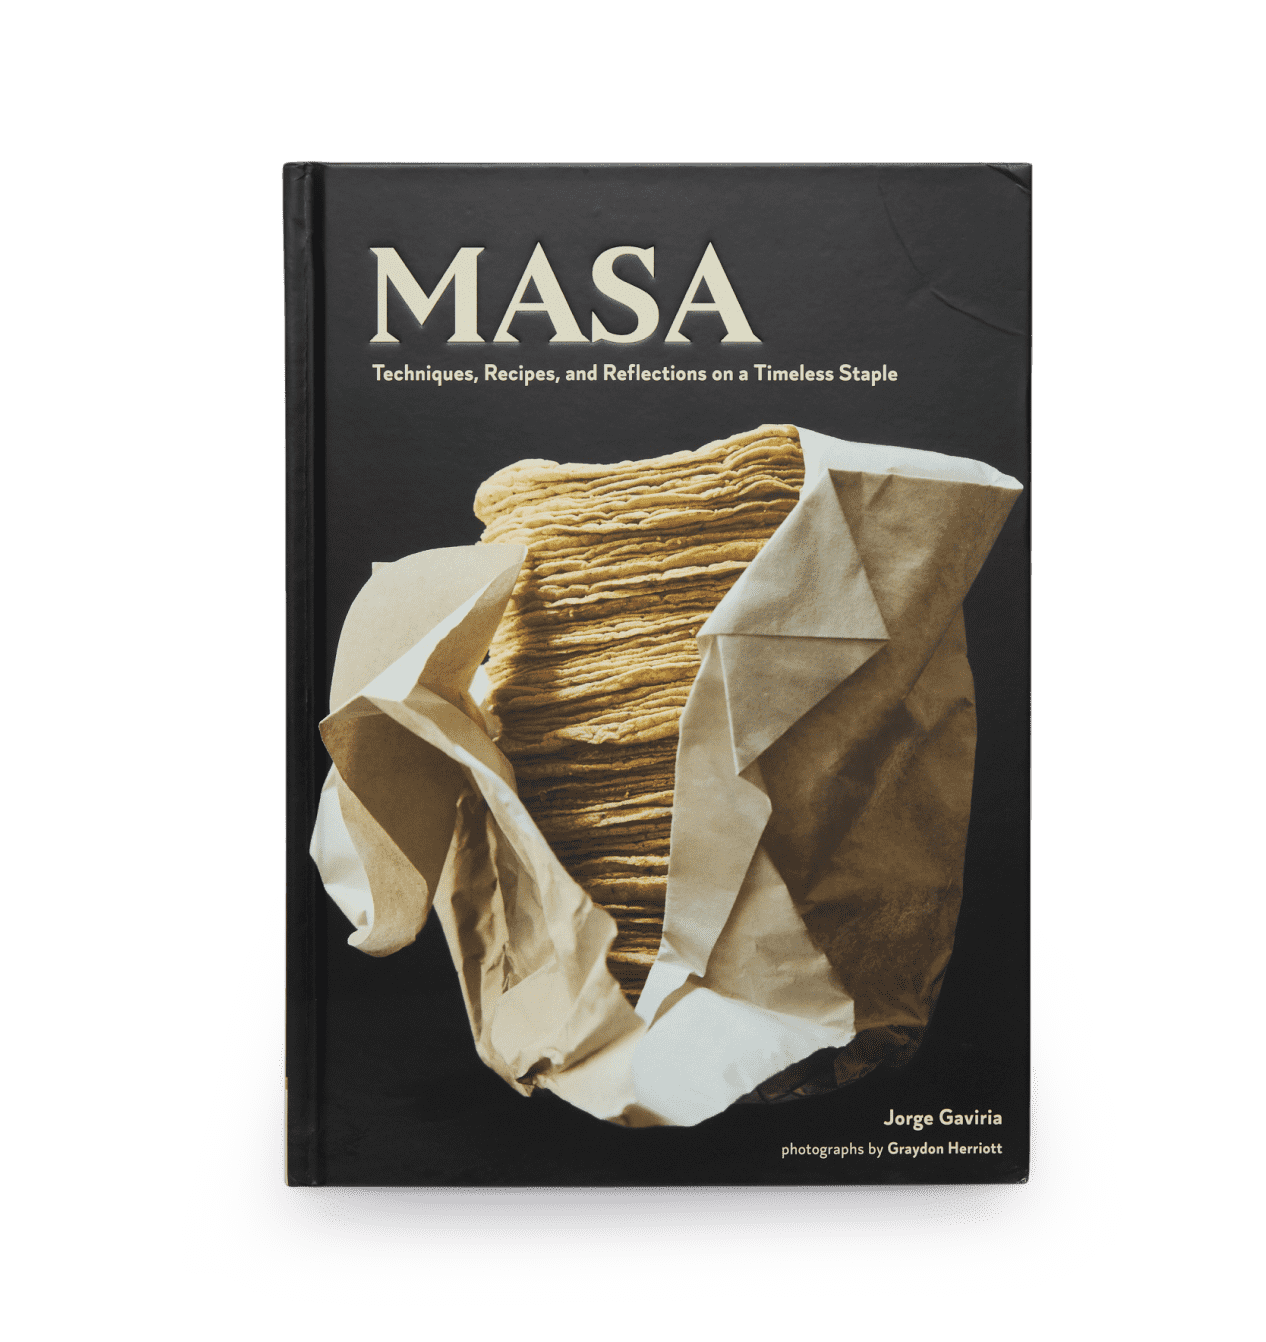 Libro de recetas del MASA de Jorge Gaviria | Libro de cocina mexicana